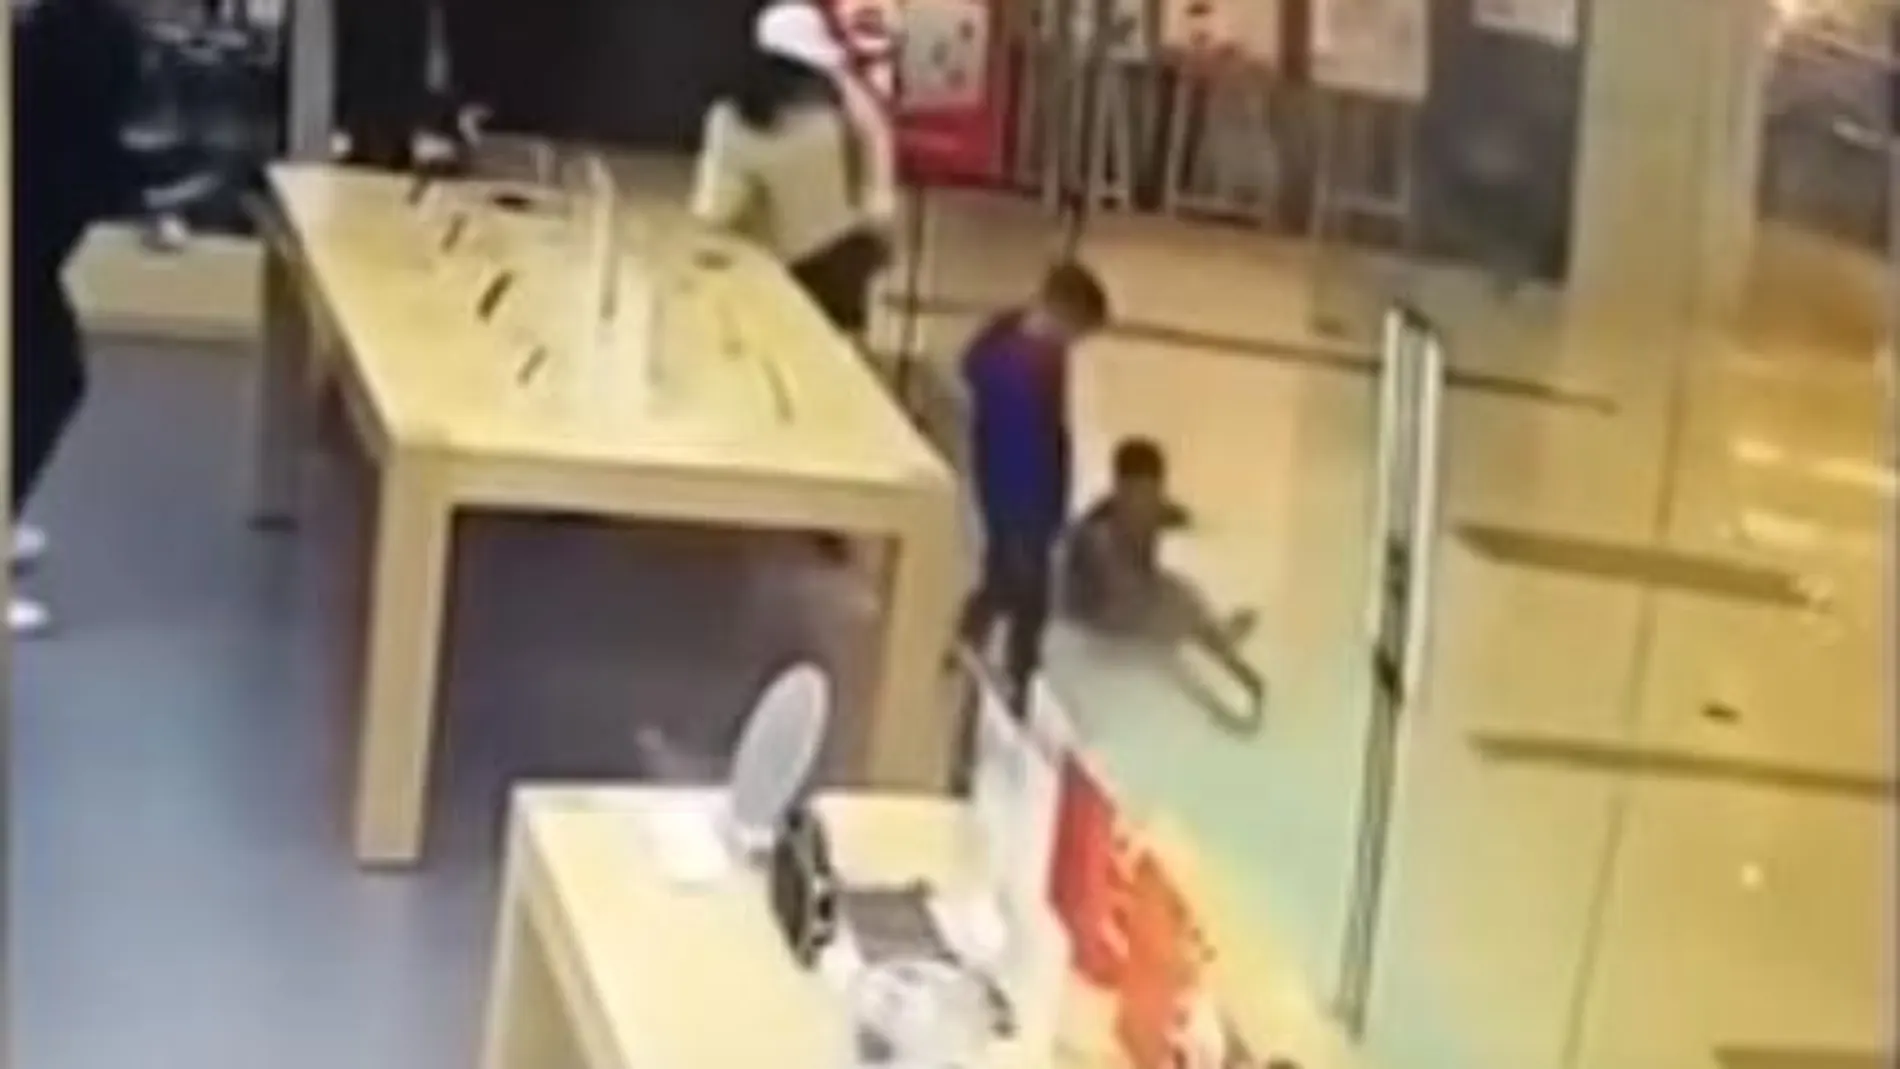 Una puerta de cristal de una tienda Apple se rompe y hiere a un niño en la cara